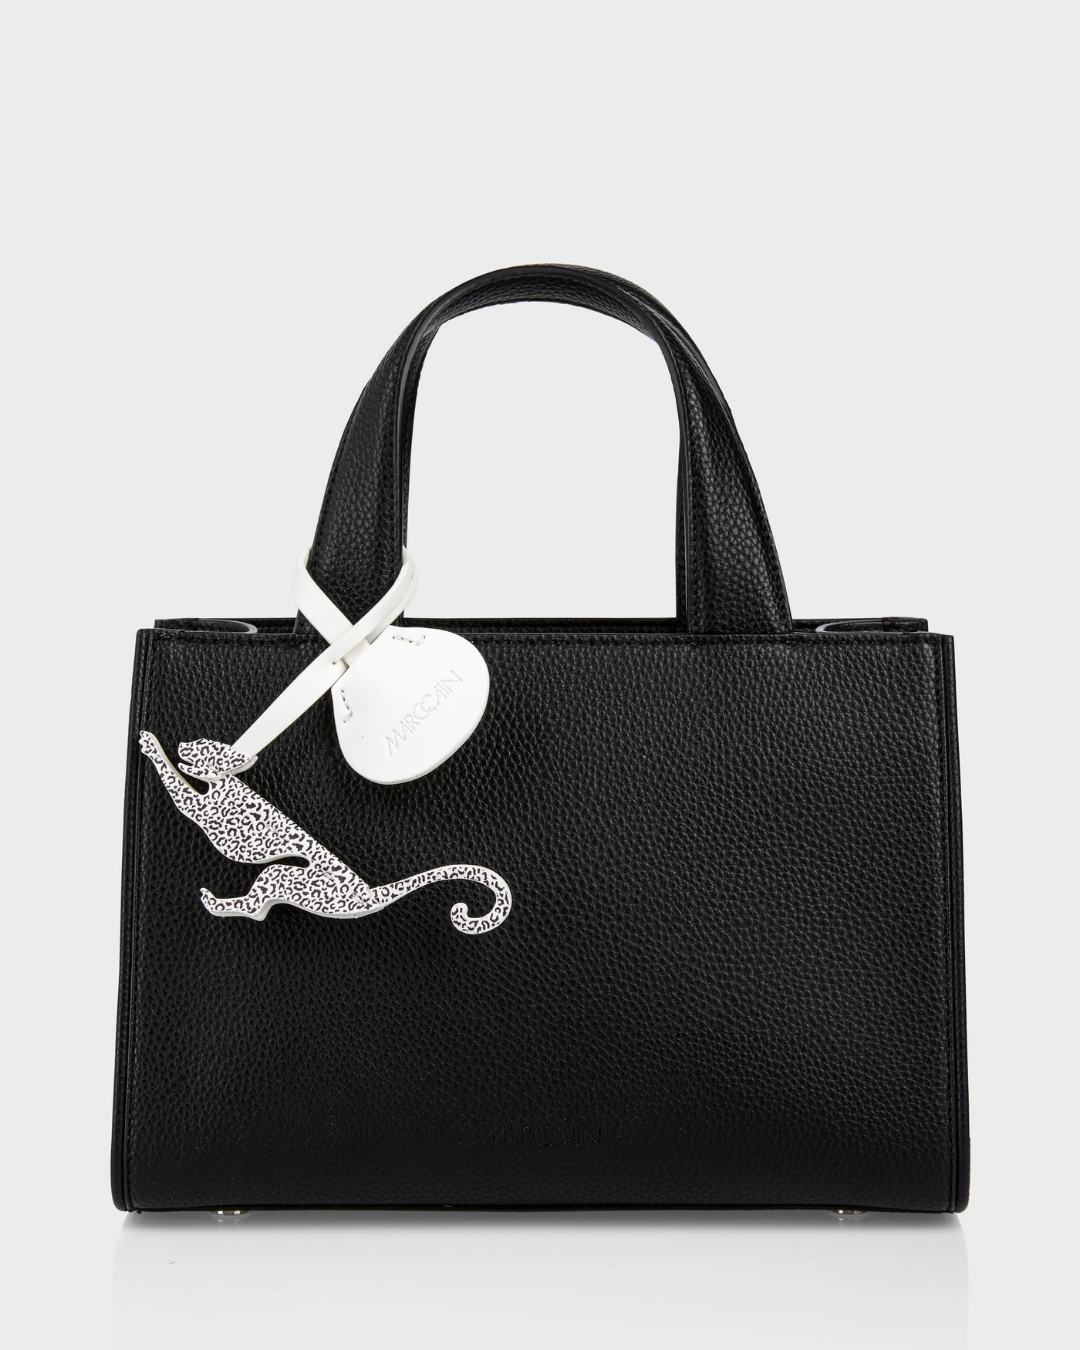 Handle bag with shoulder strap - black